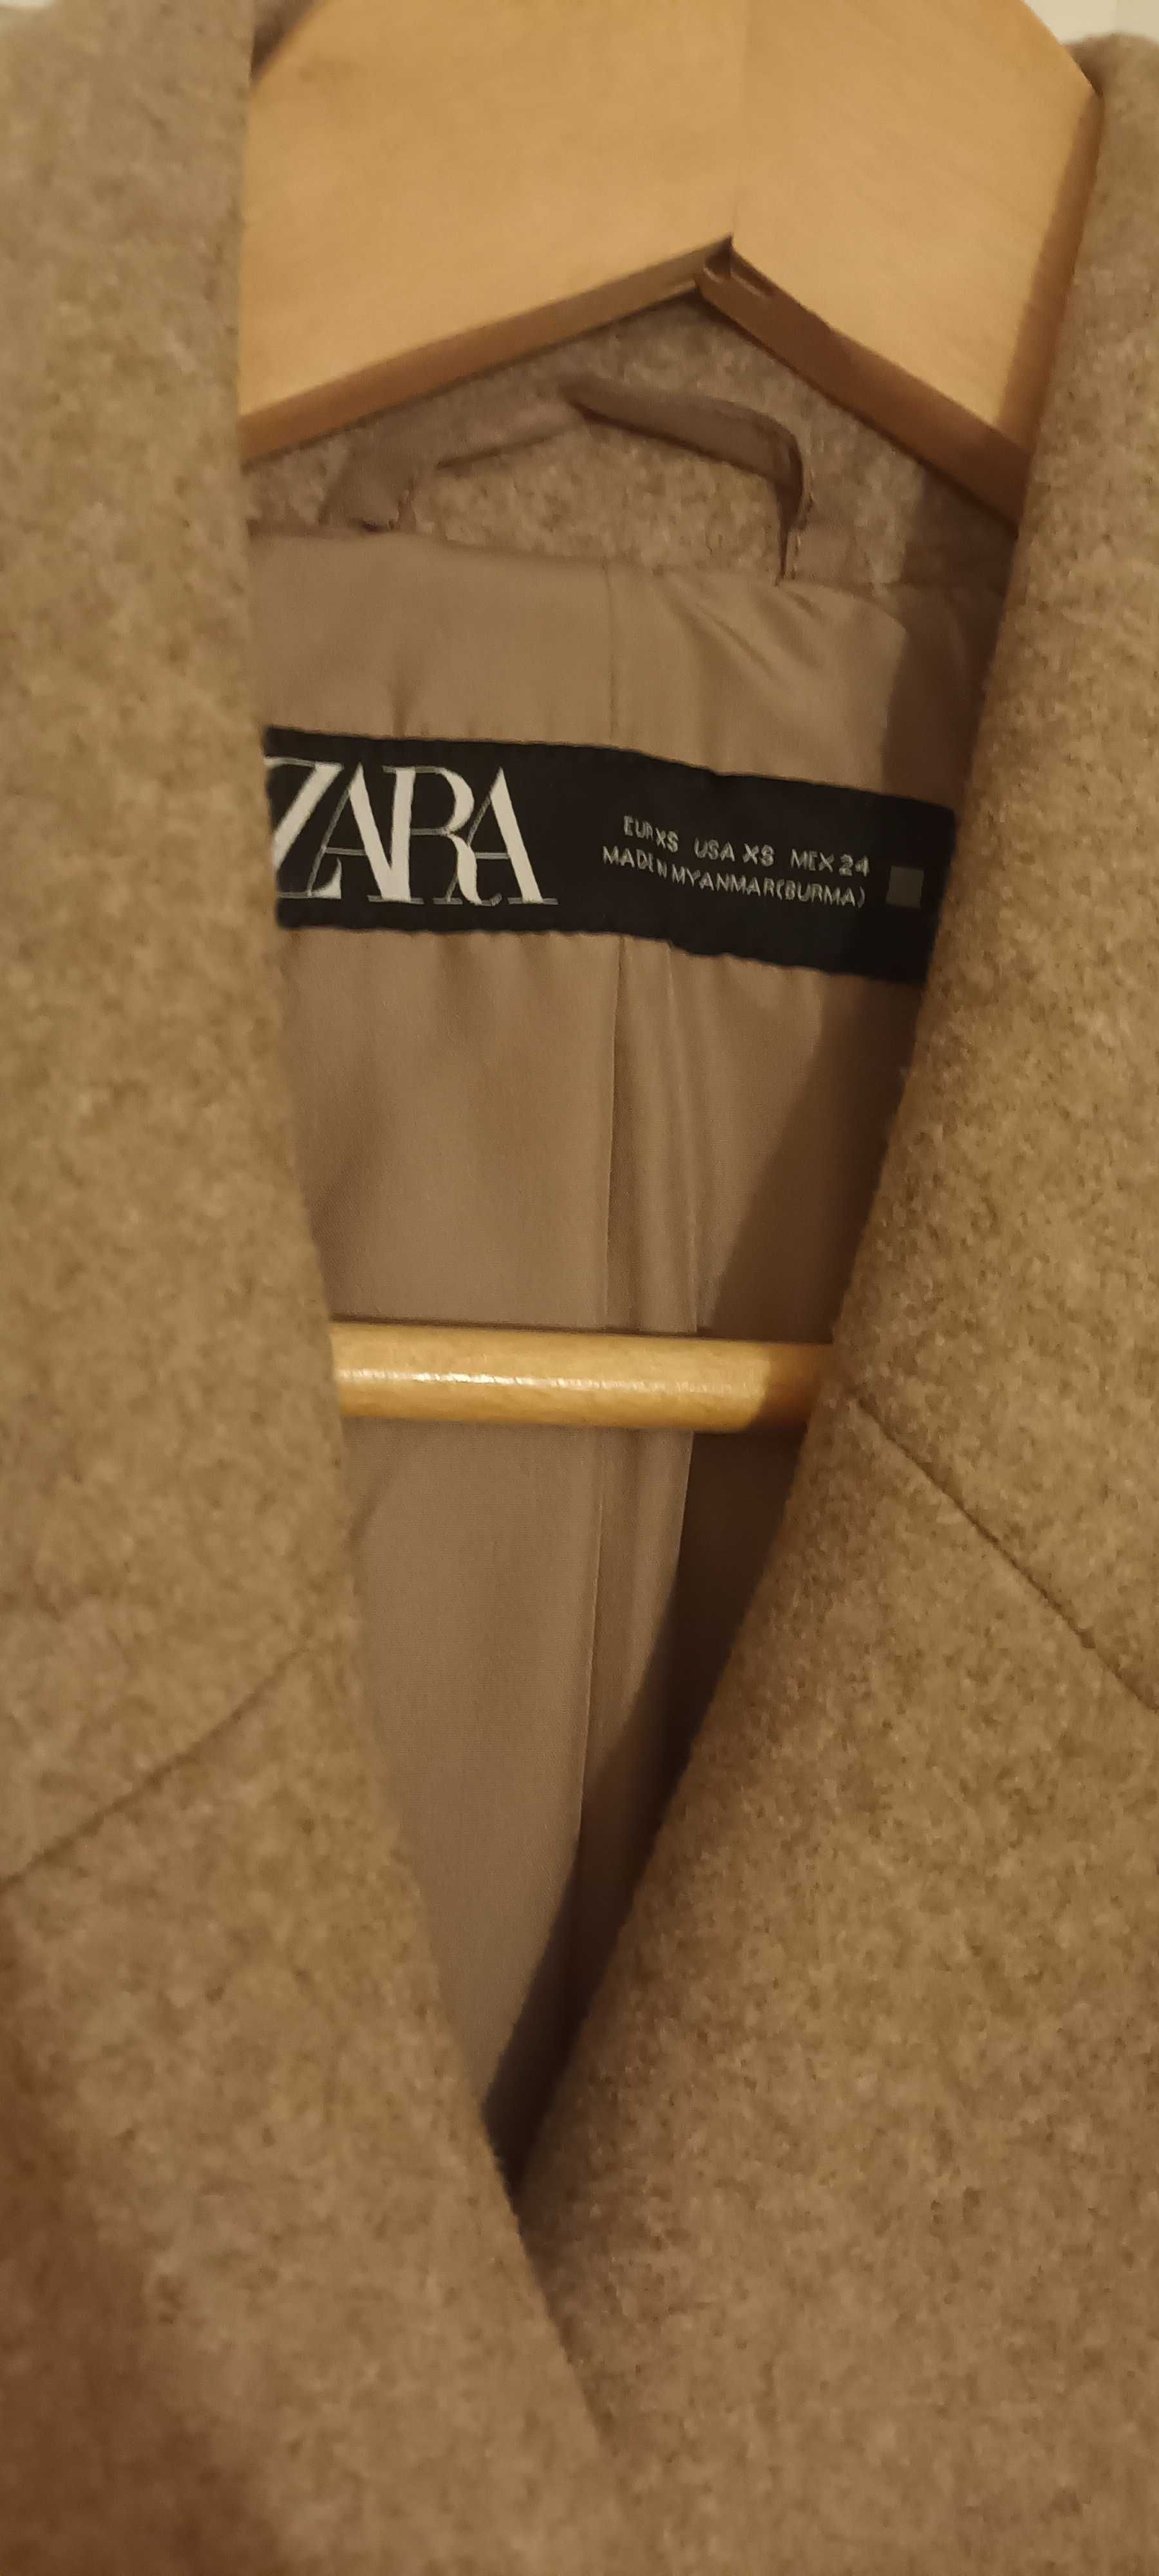 Sobretudo oversize tendência desta coleção da Zara novo!